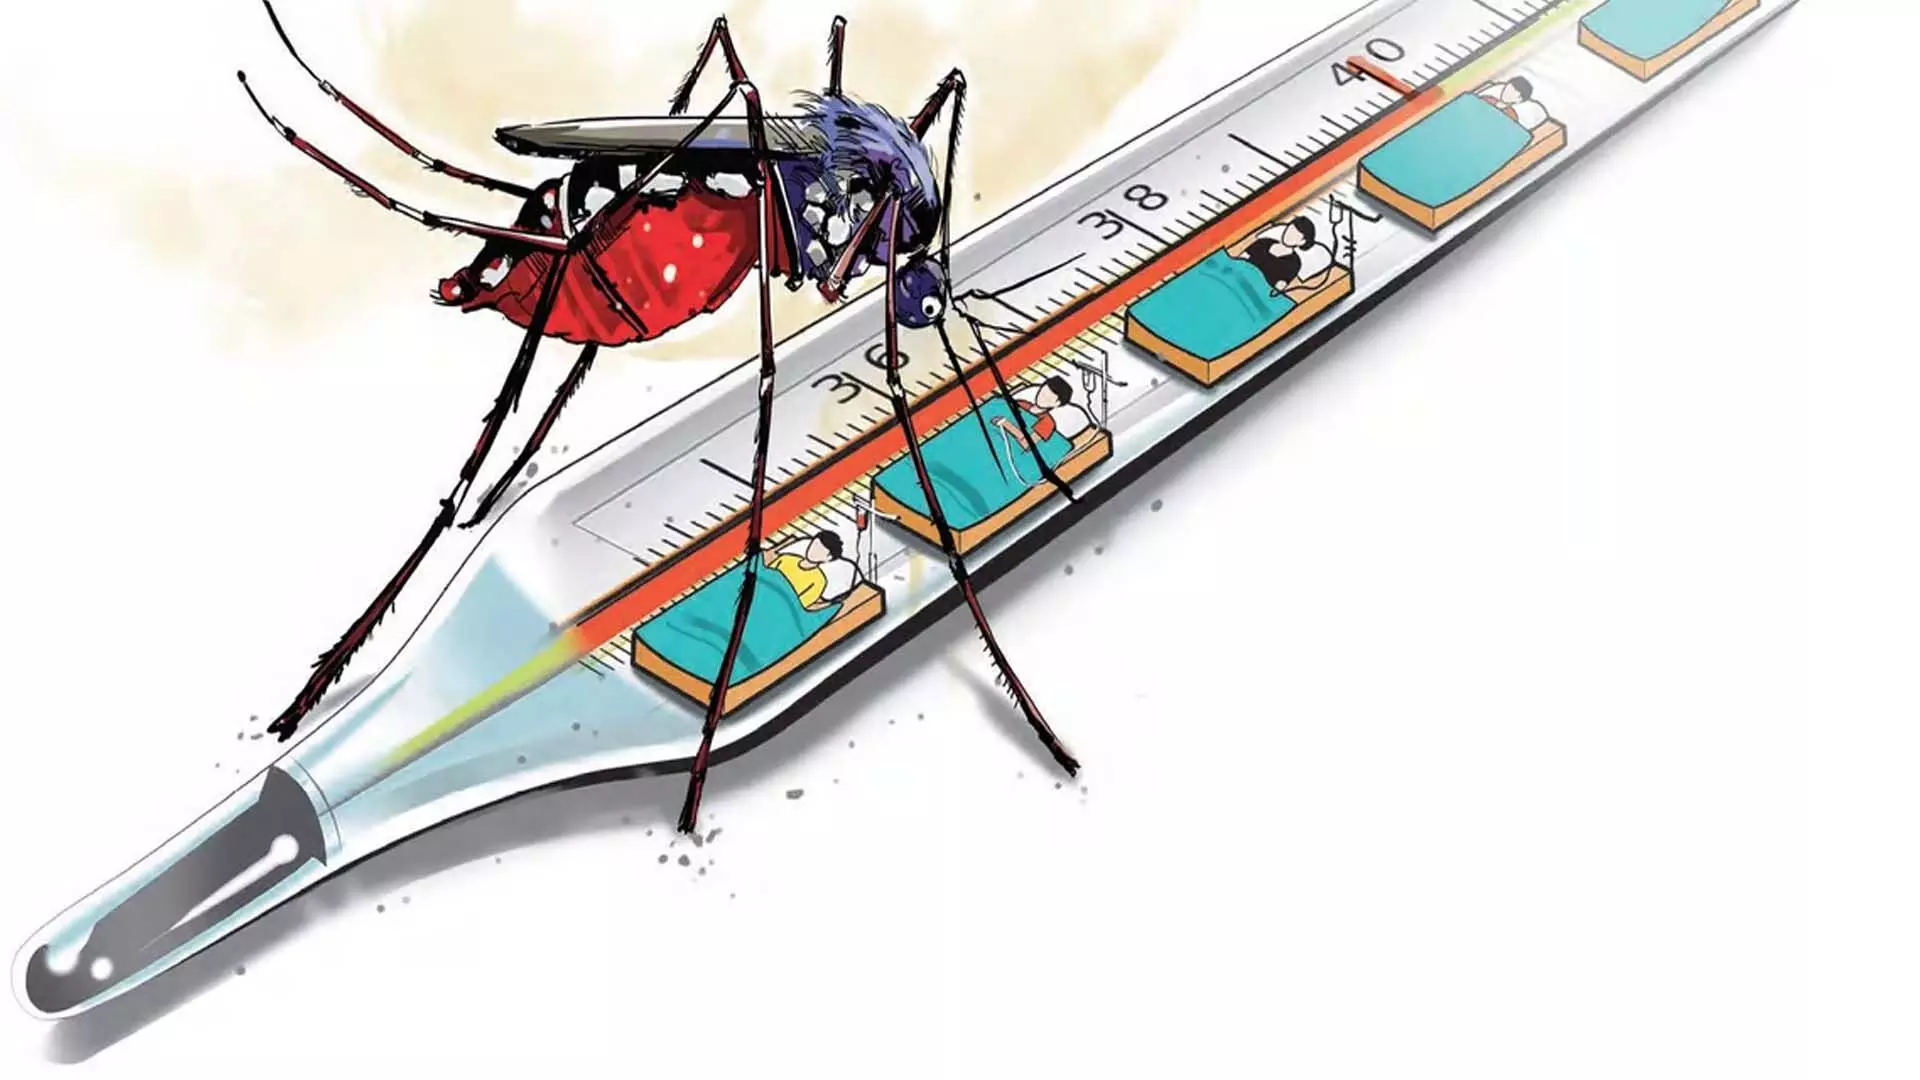 Karnataka Health Minister said, सितंबर तक डेंगू के प्रति अतिरिक्त सतर्क रहने की जरूरत